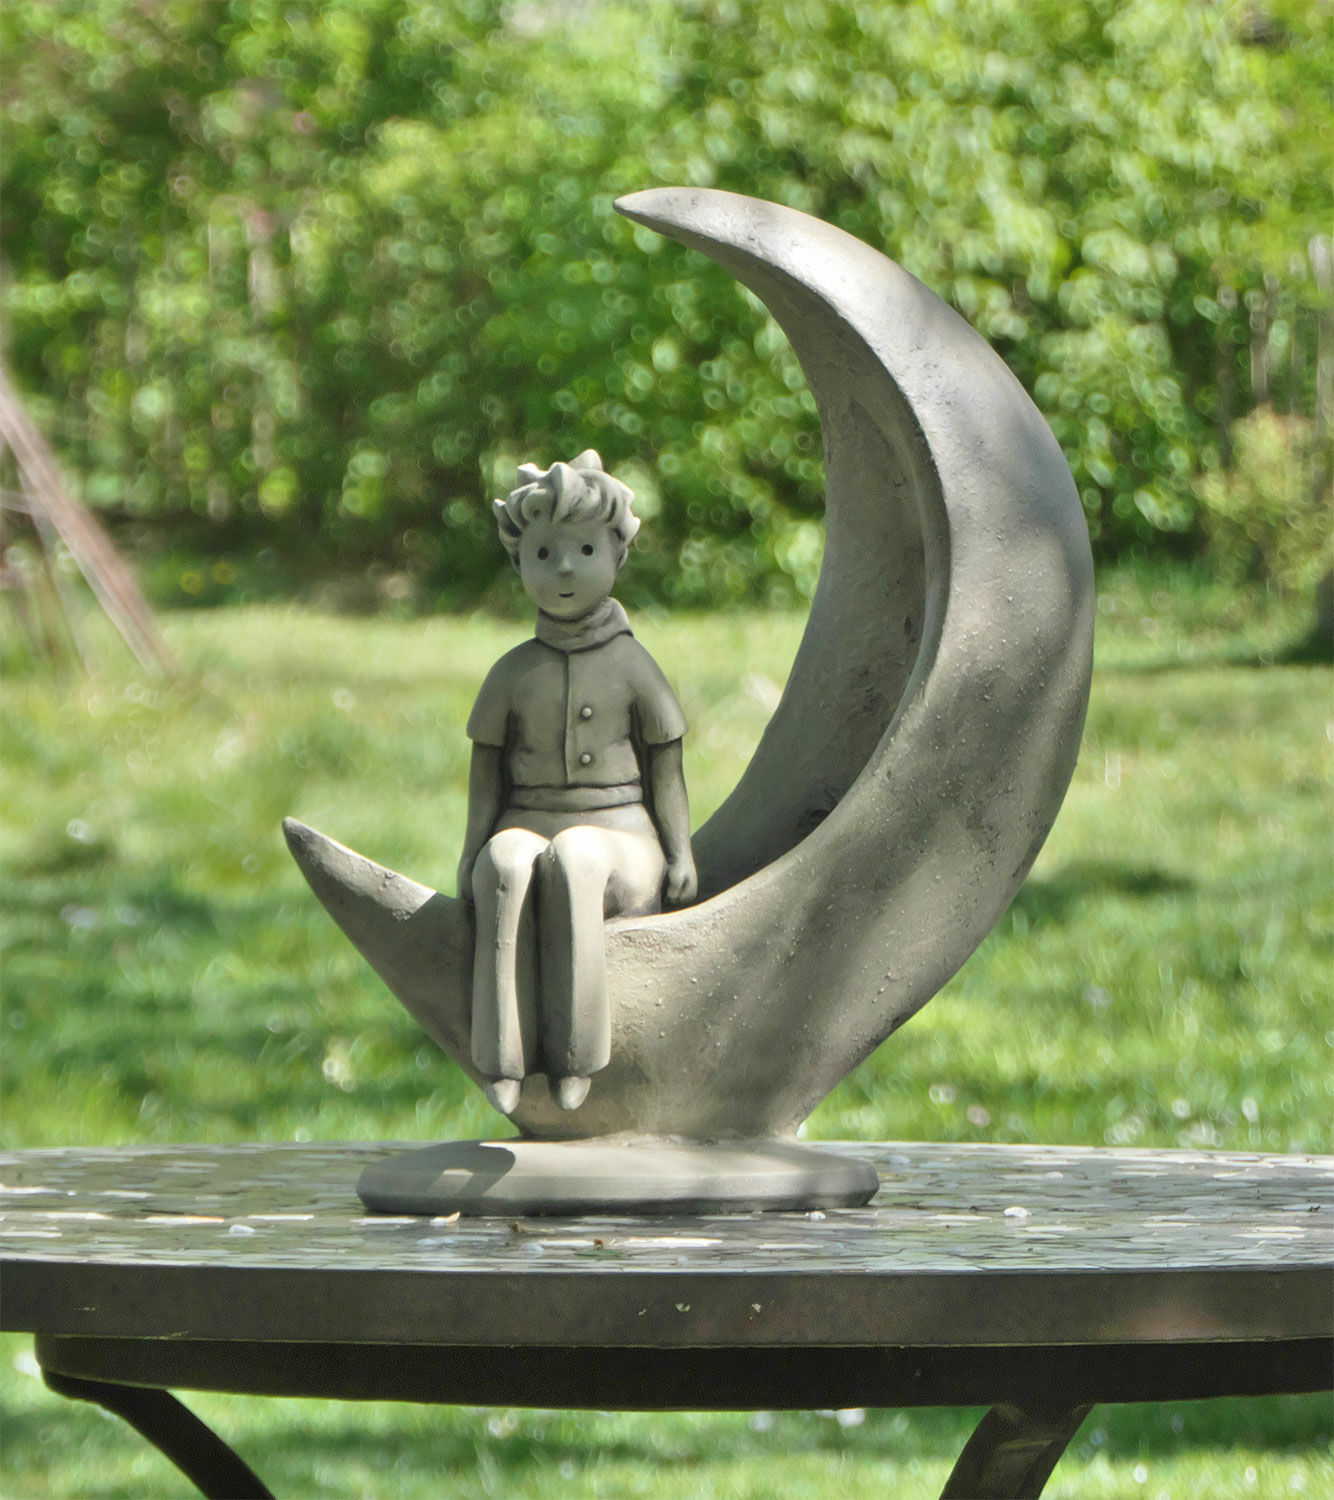 Achetez Sculpture de jardin Le Petit Prince dans la Lune, pierre